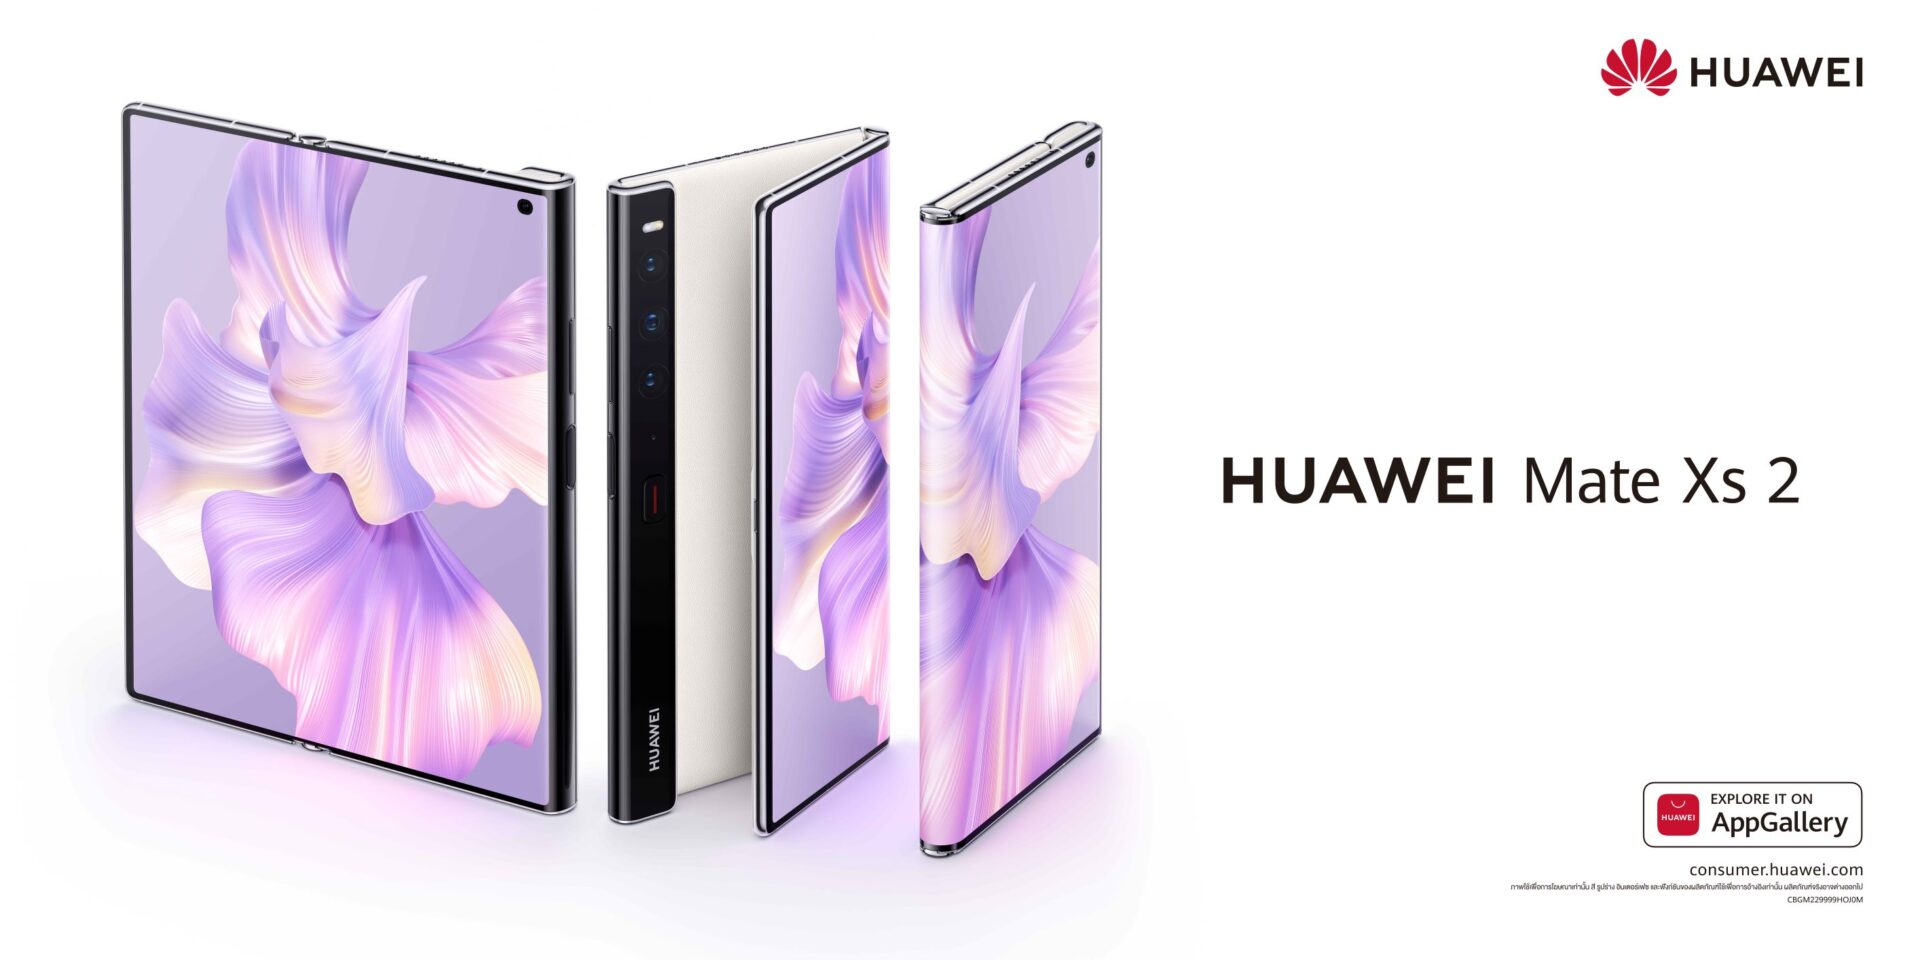 เปิดราคาไทย HUAWEI Mate Xs 2 สมาร์ตโฟนจอพับได้ระดับไฮเอนด์ที่น้ำหนักเบากว่าเดิม !